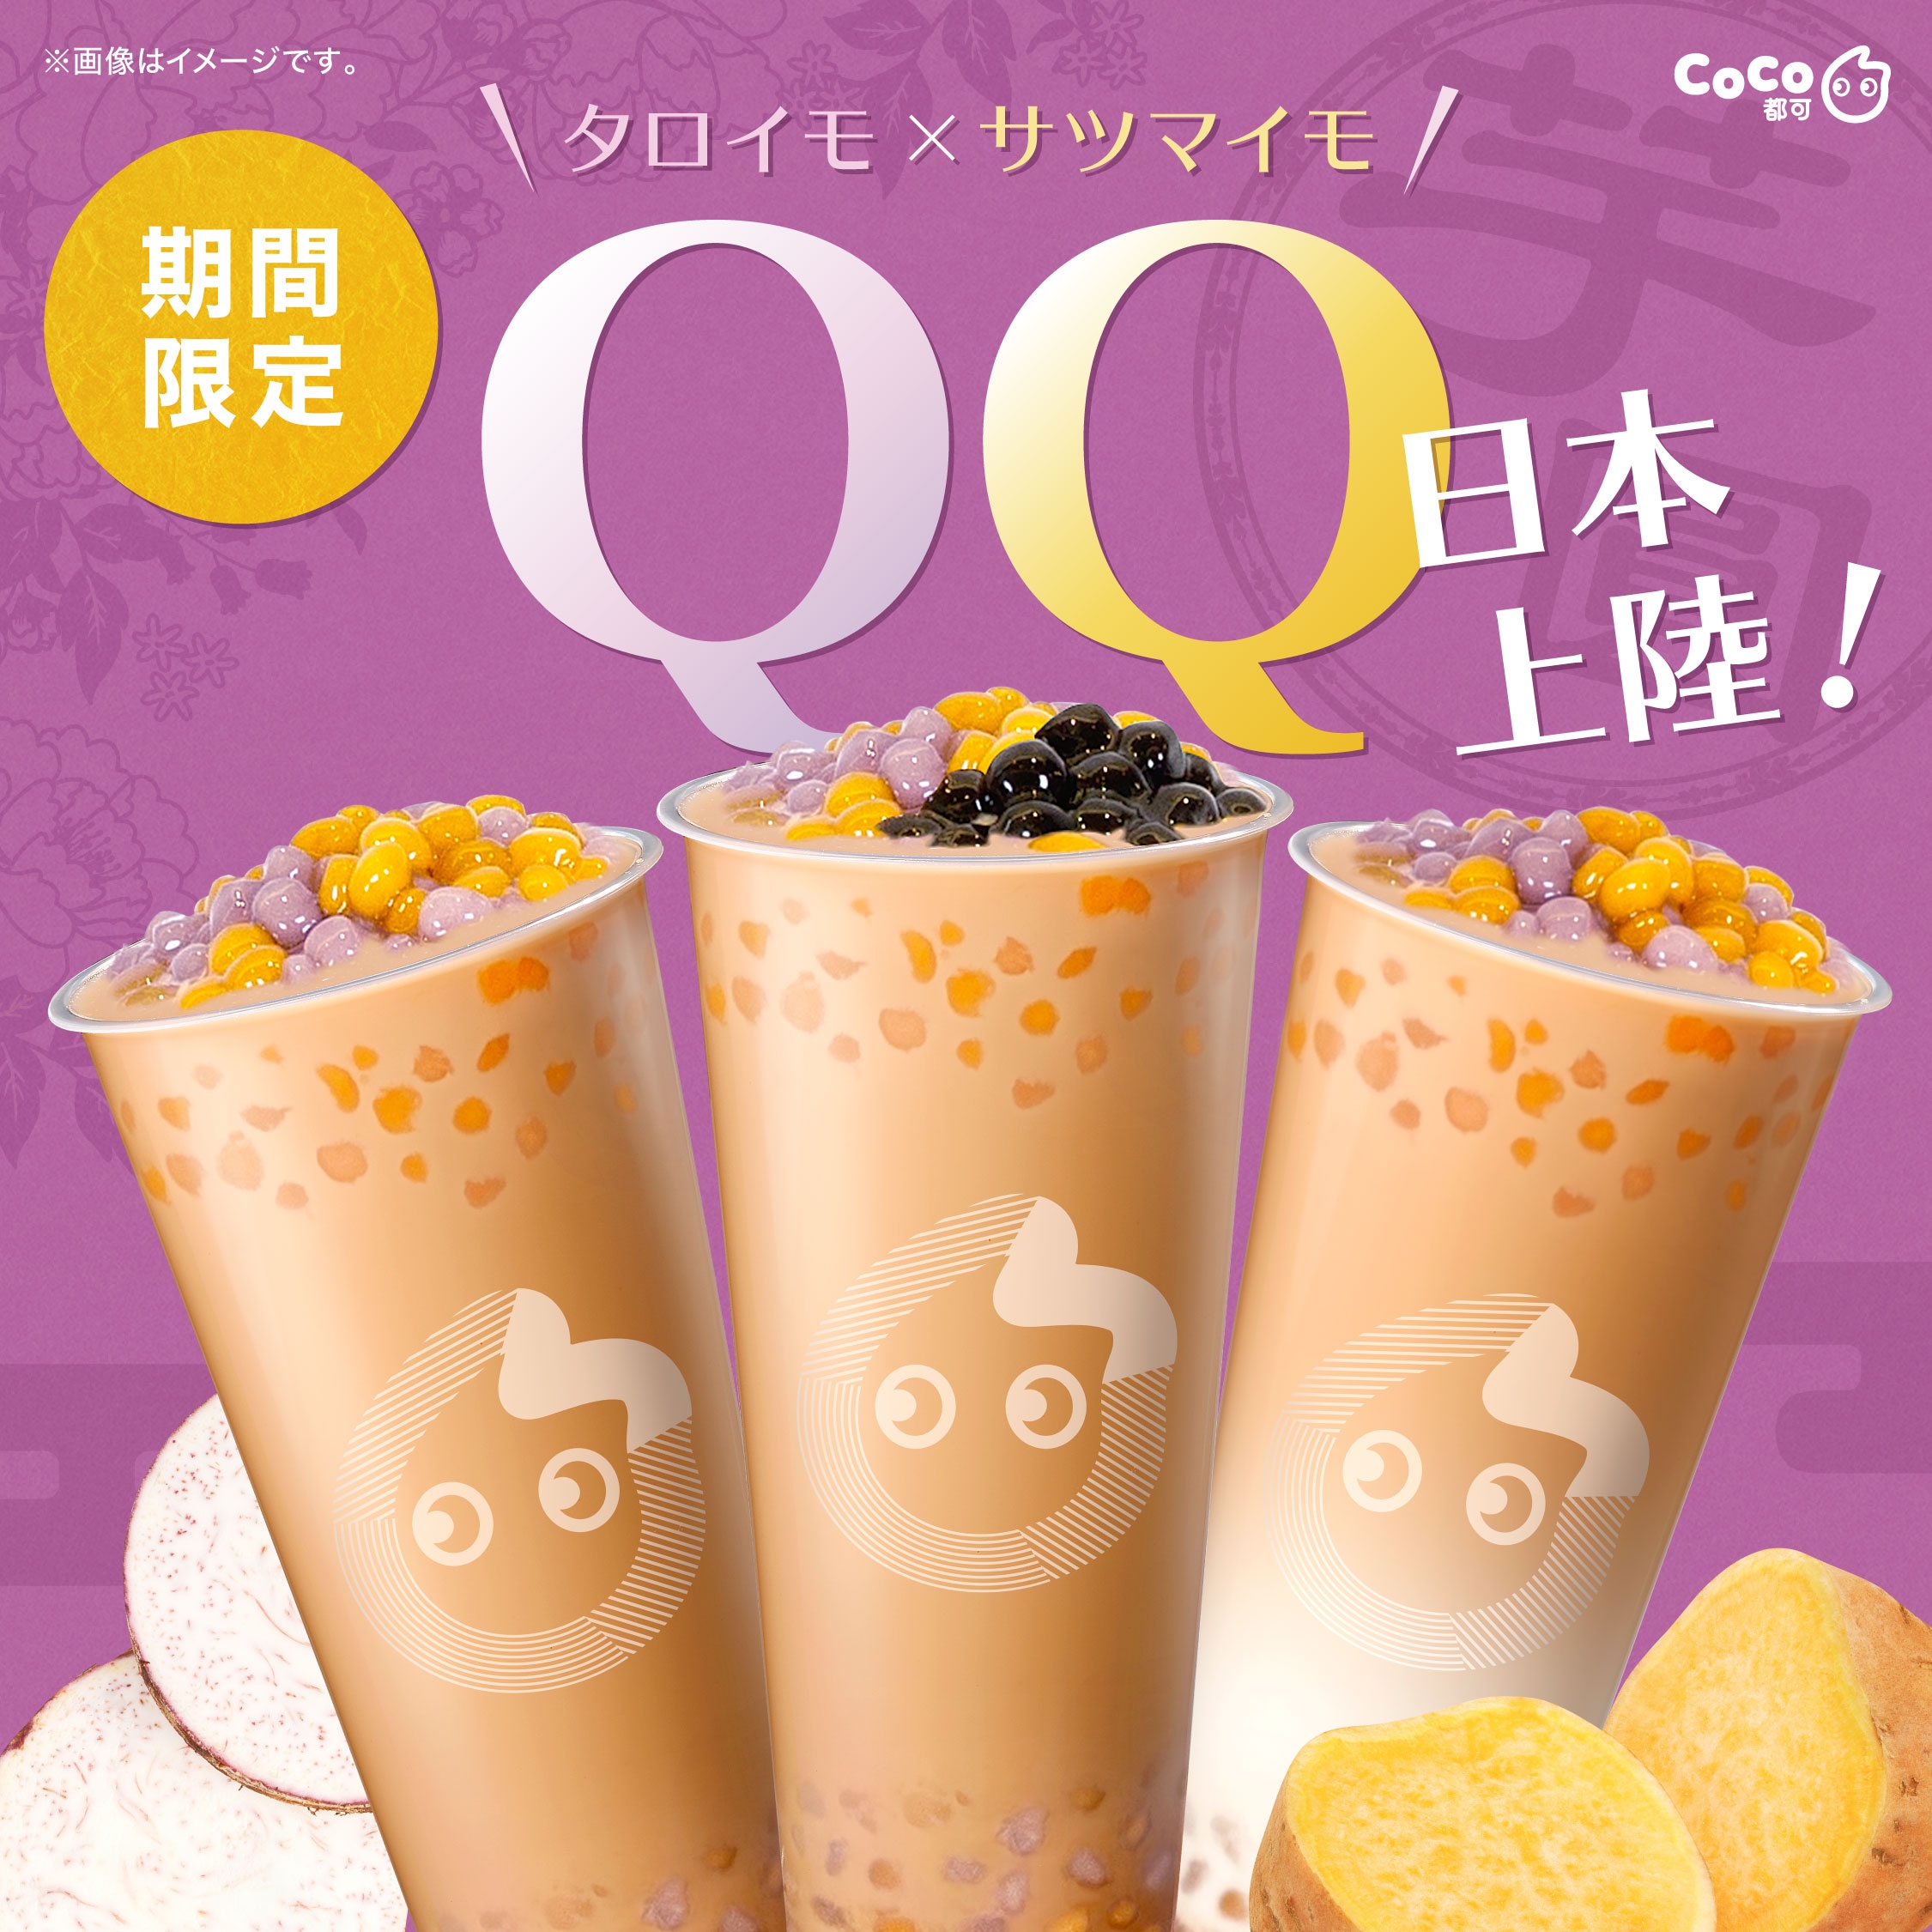 秋の新商品🍠】QQシリーズが期間限定で登場✨ | CoCo都可 Japan ...